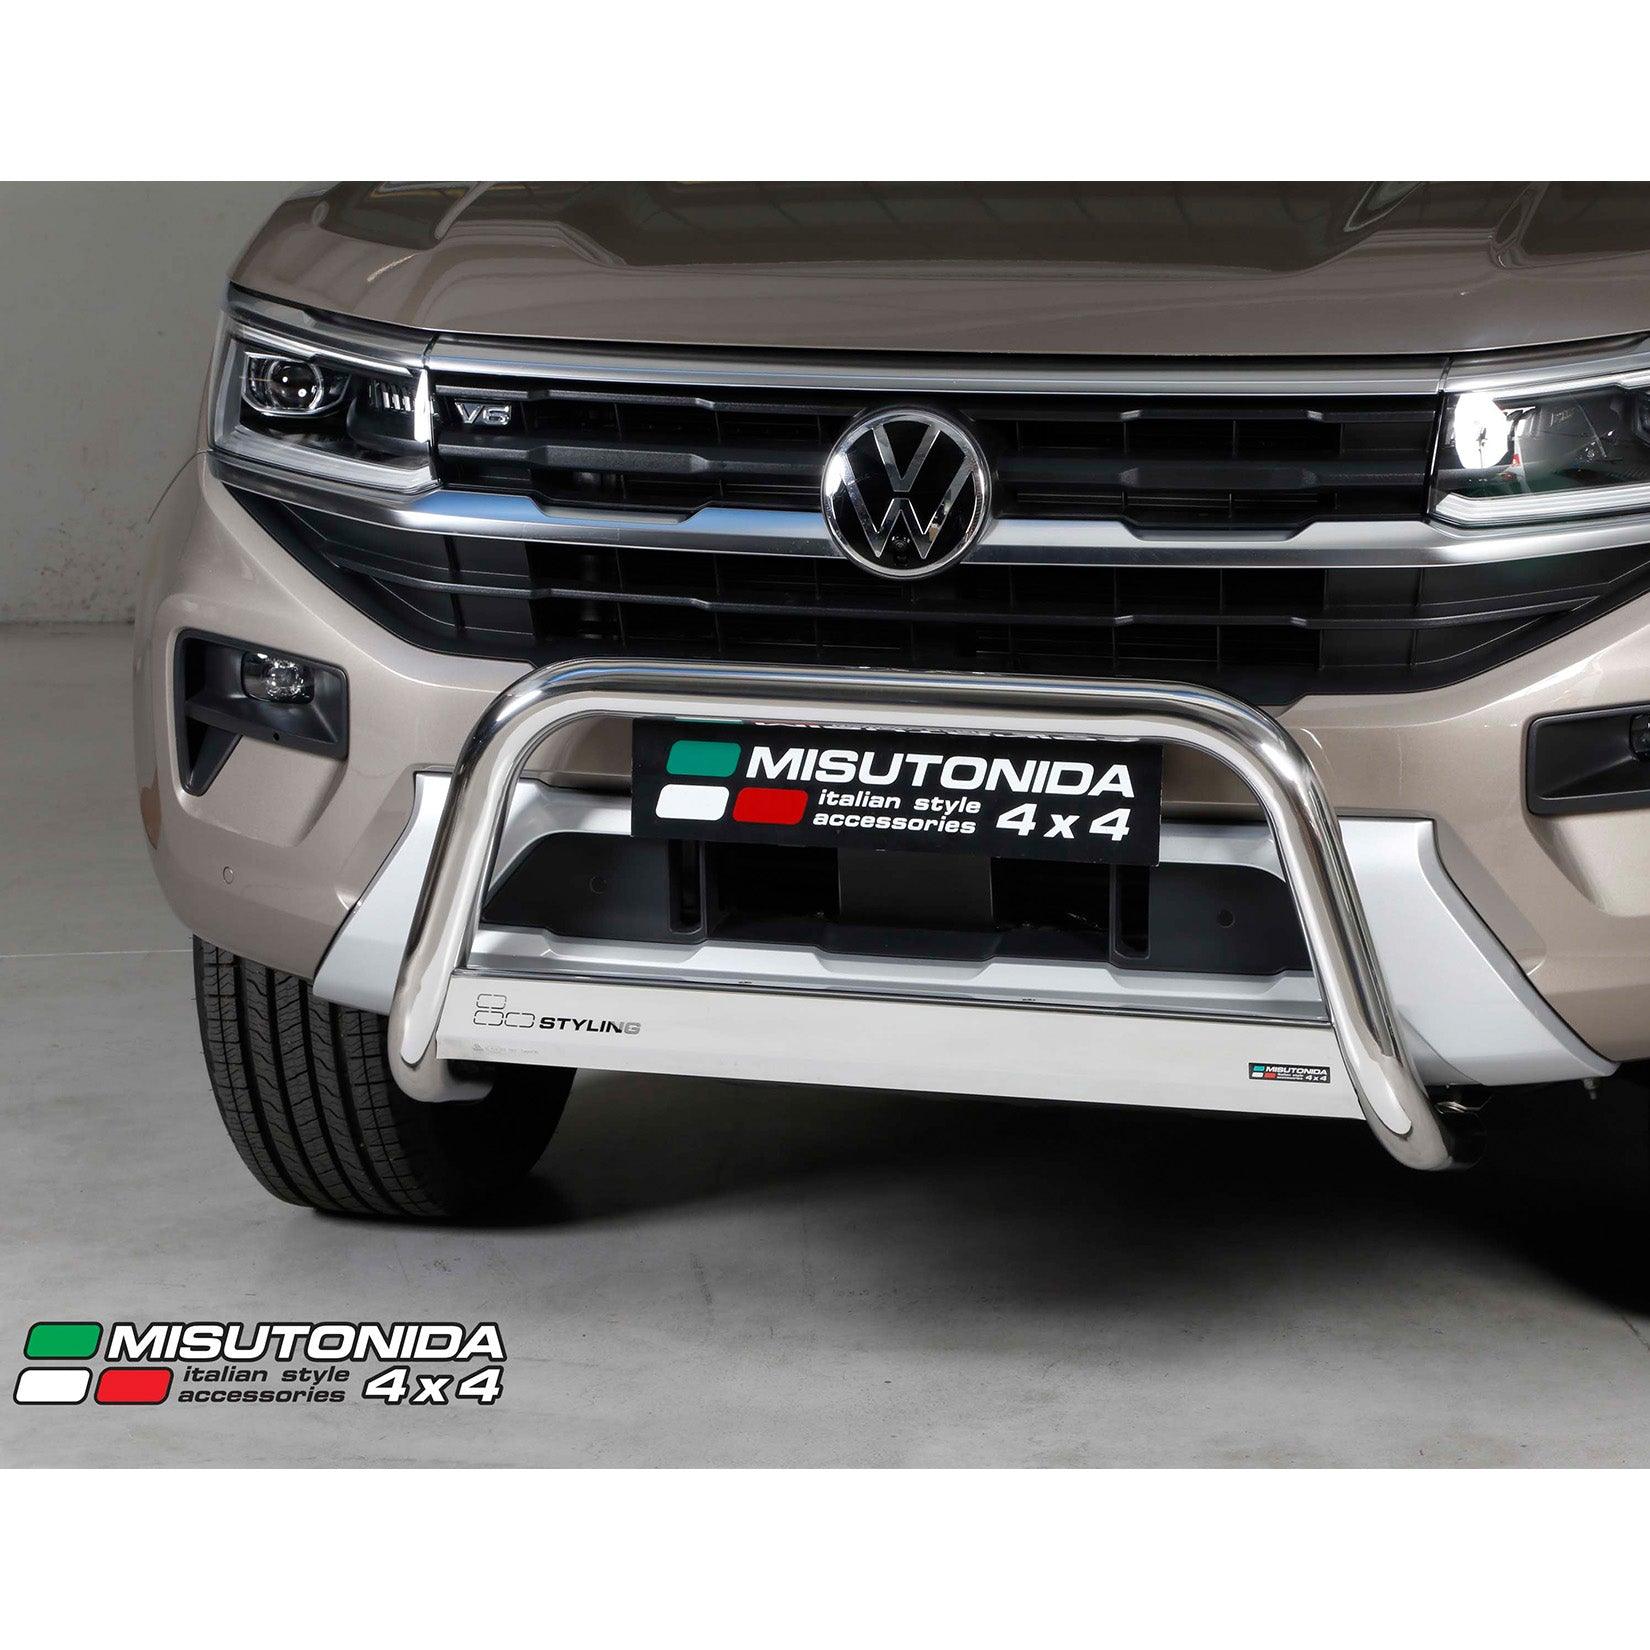 Misutonida 4x4 Italy: Peugeot 2008 2020 accessories range 